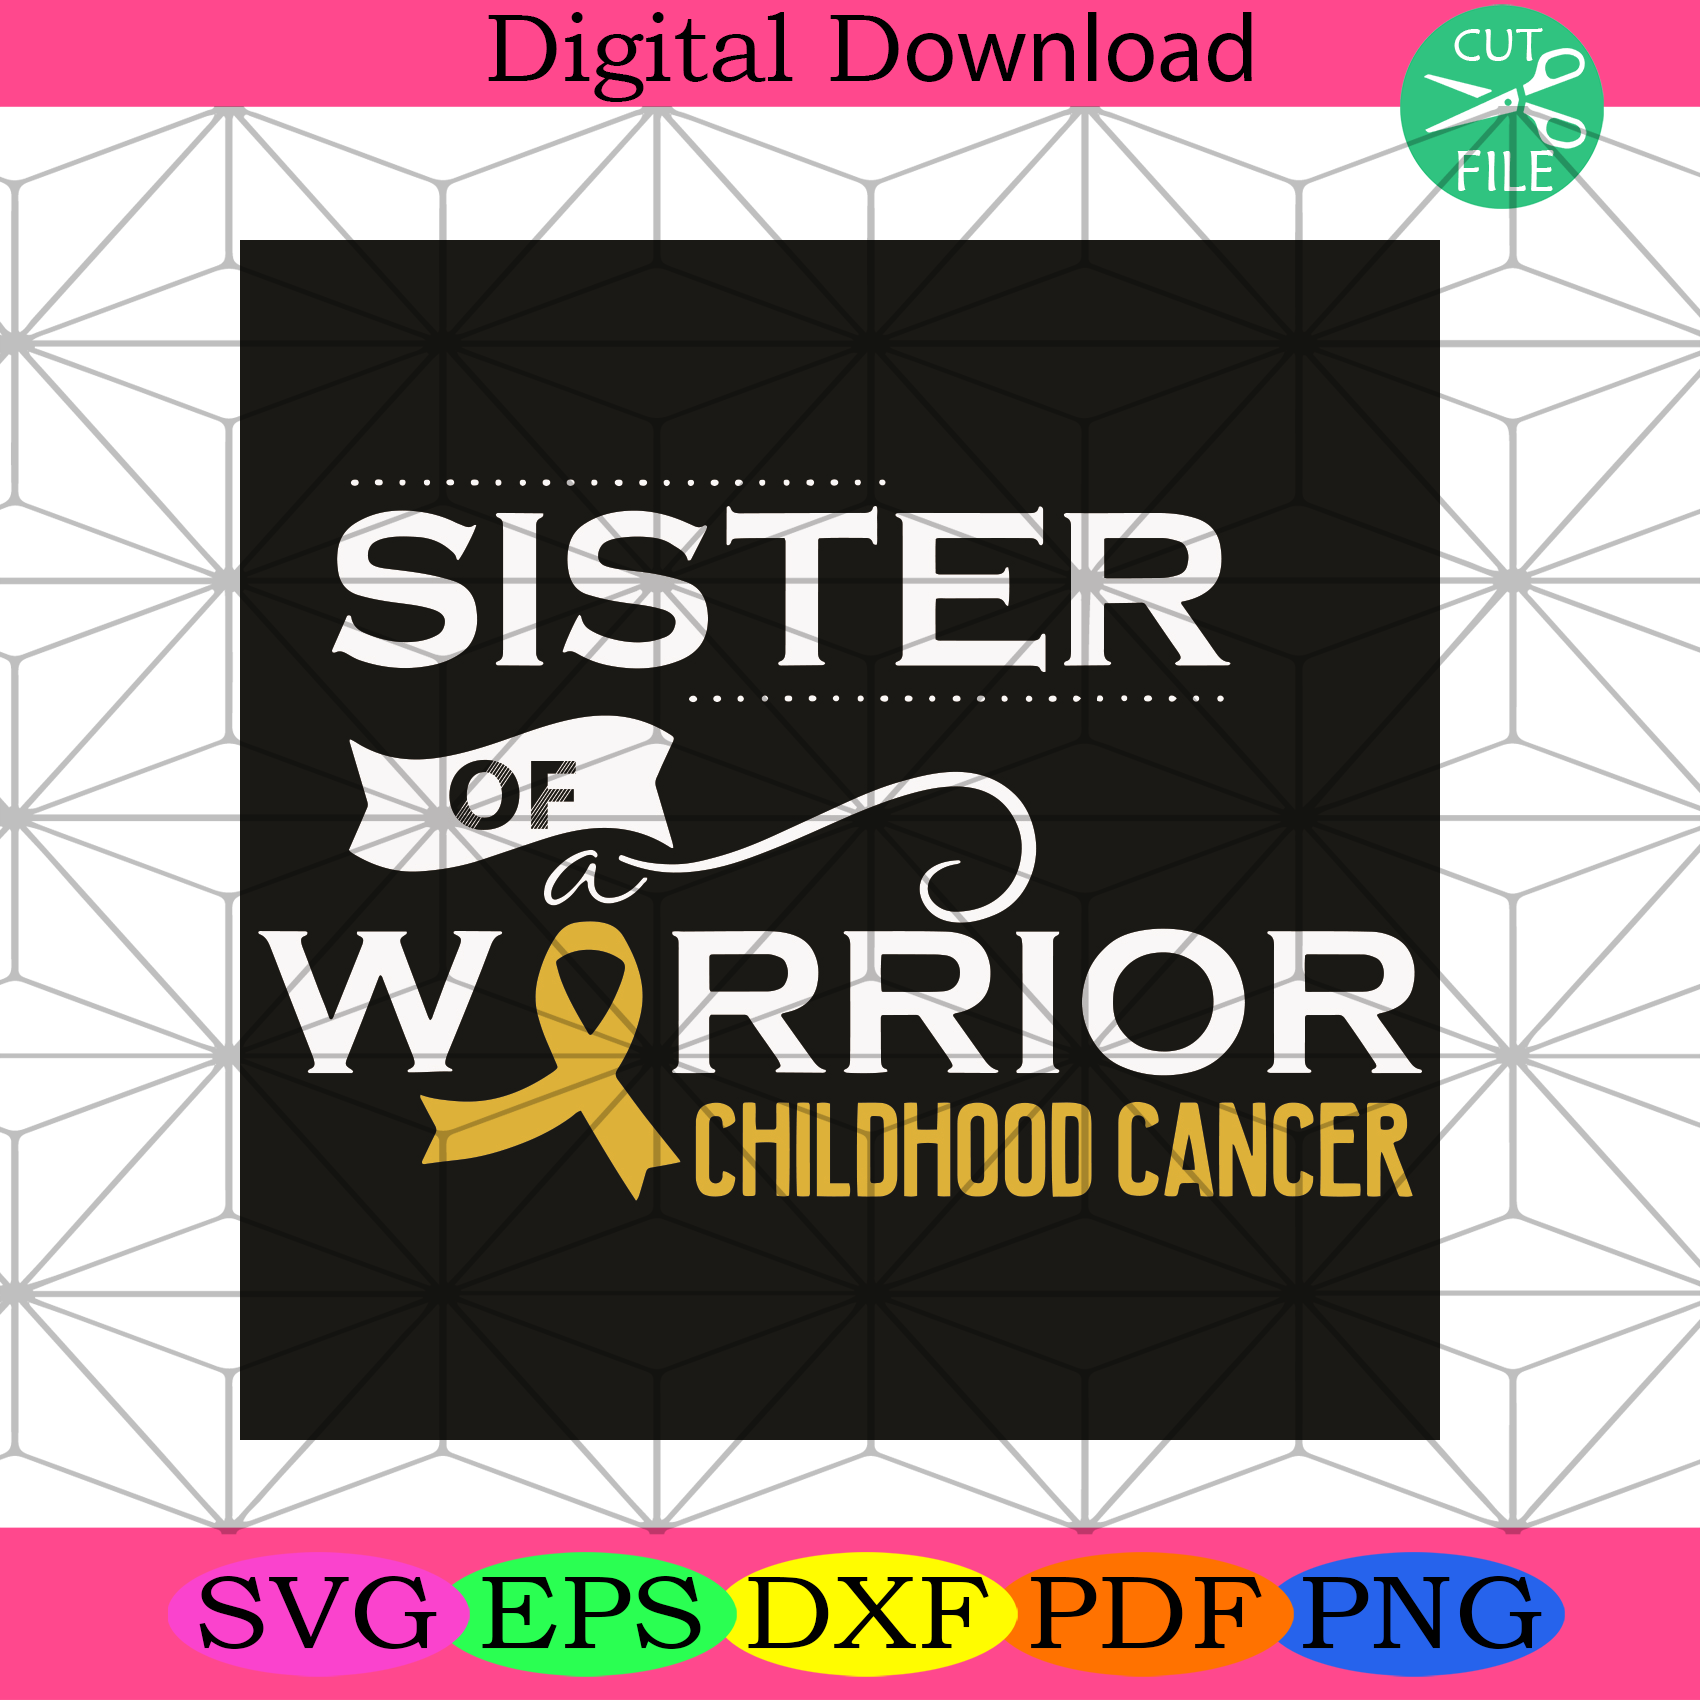 Sister Of A Warrior Childhood Cancer Svg Cancer Svg, Warrior Svg